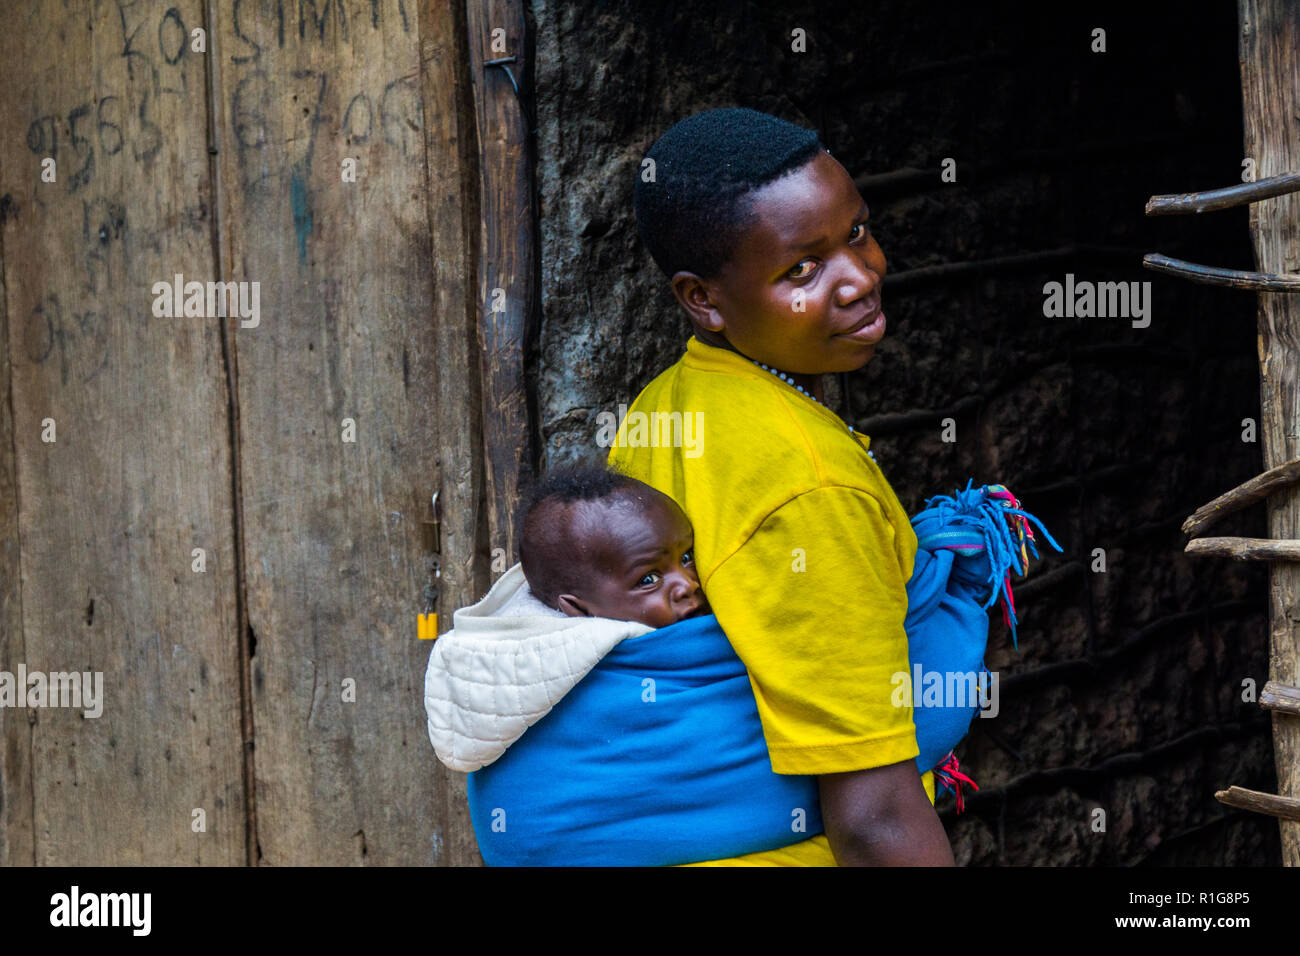 Pygmy peoples in Uganda Stock Photo